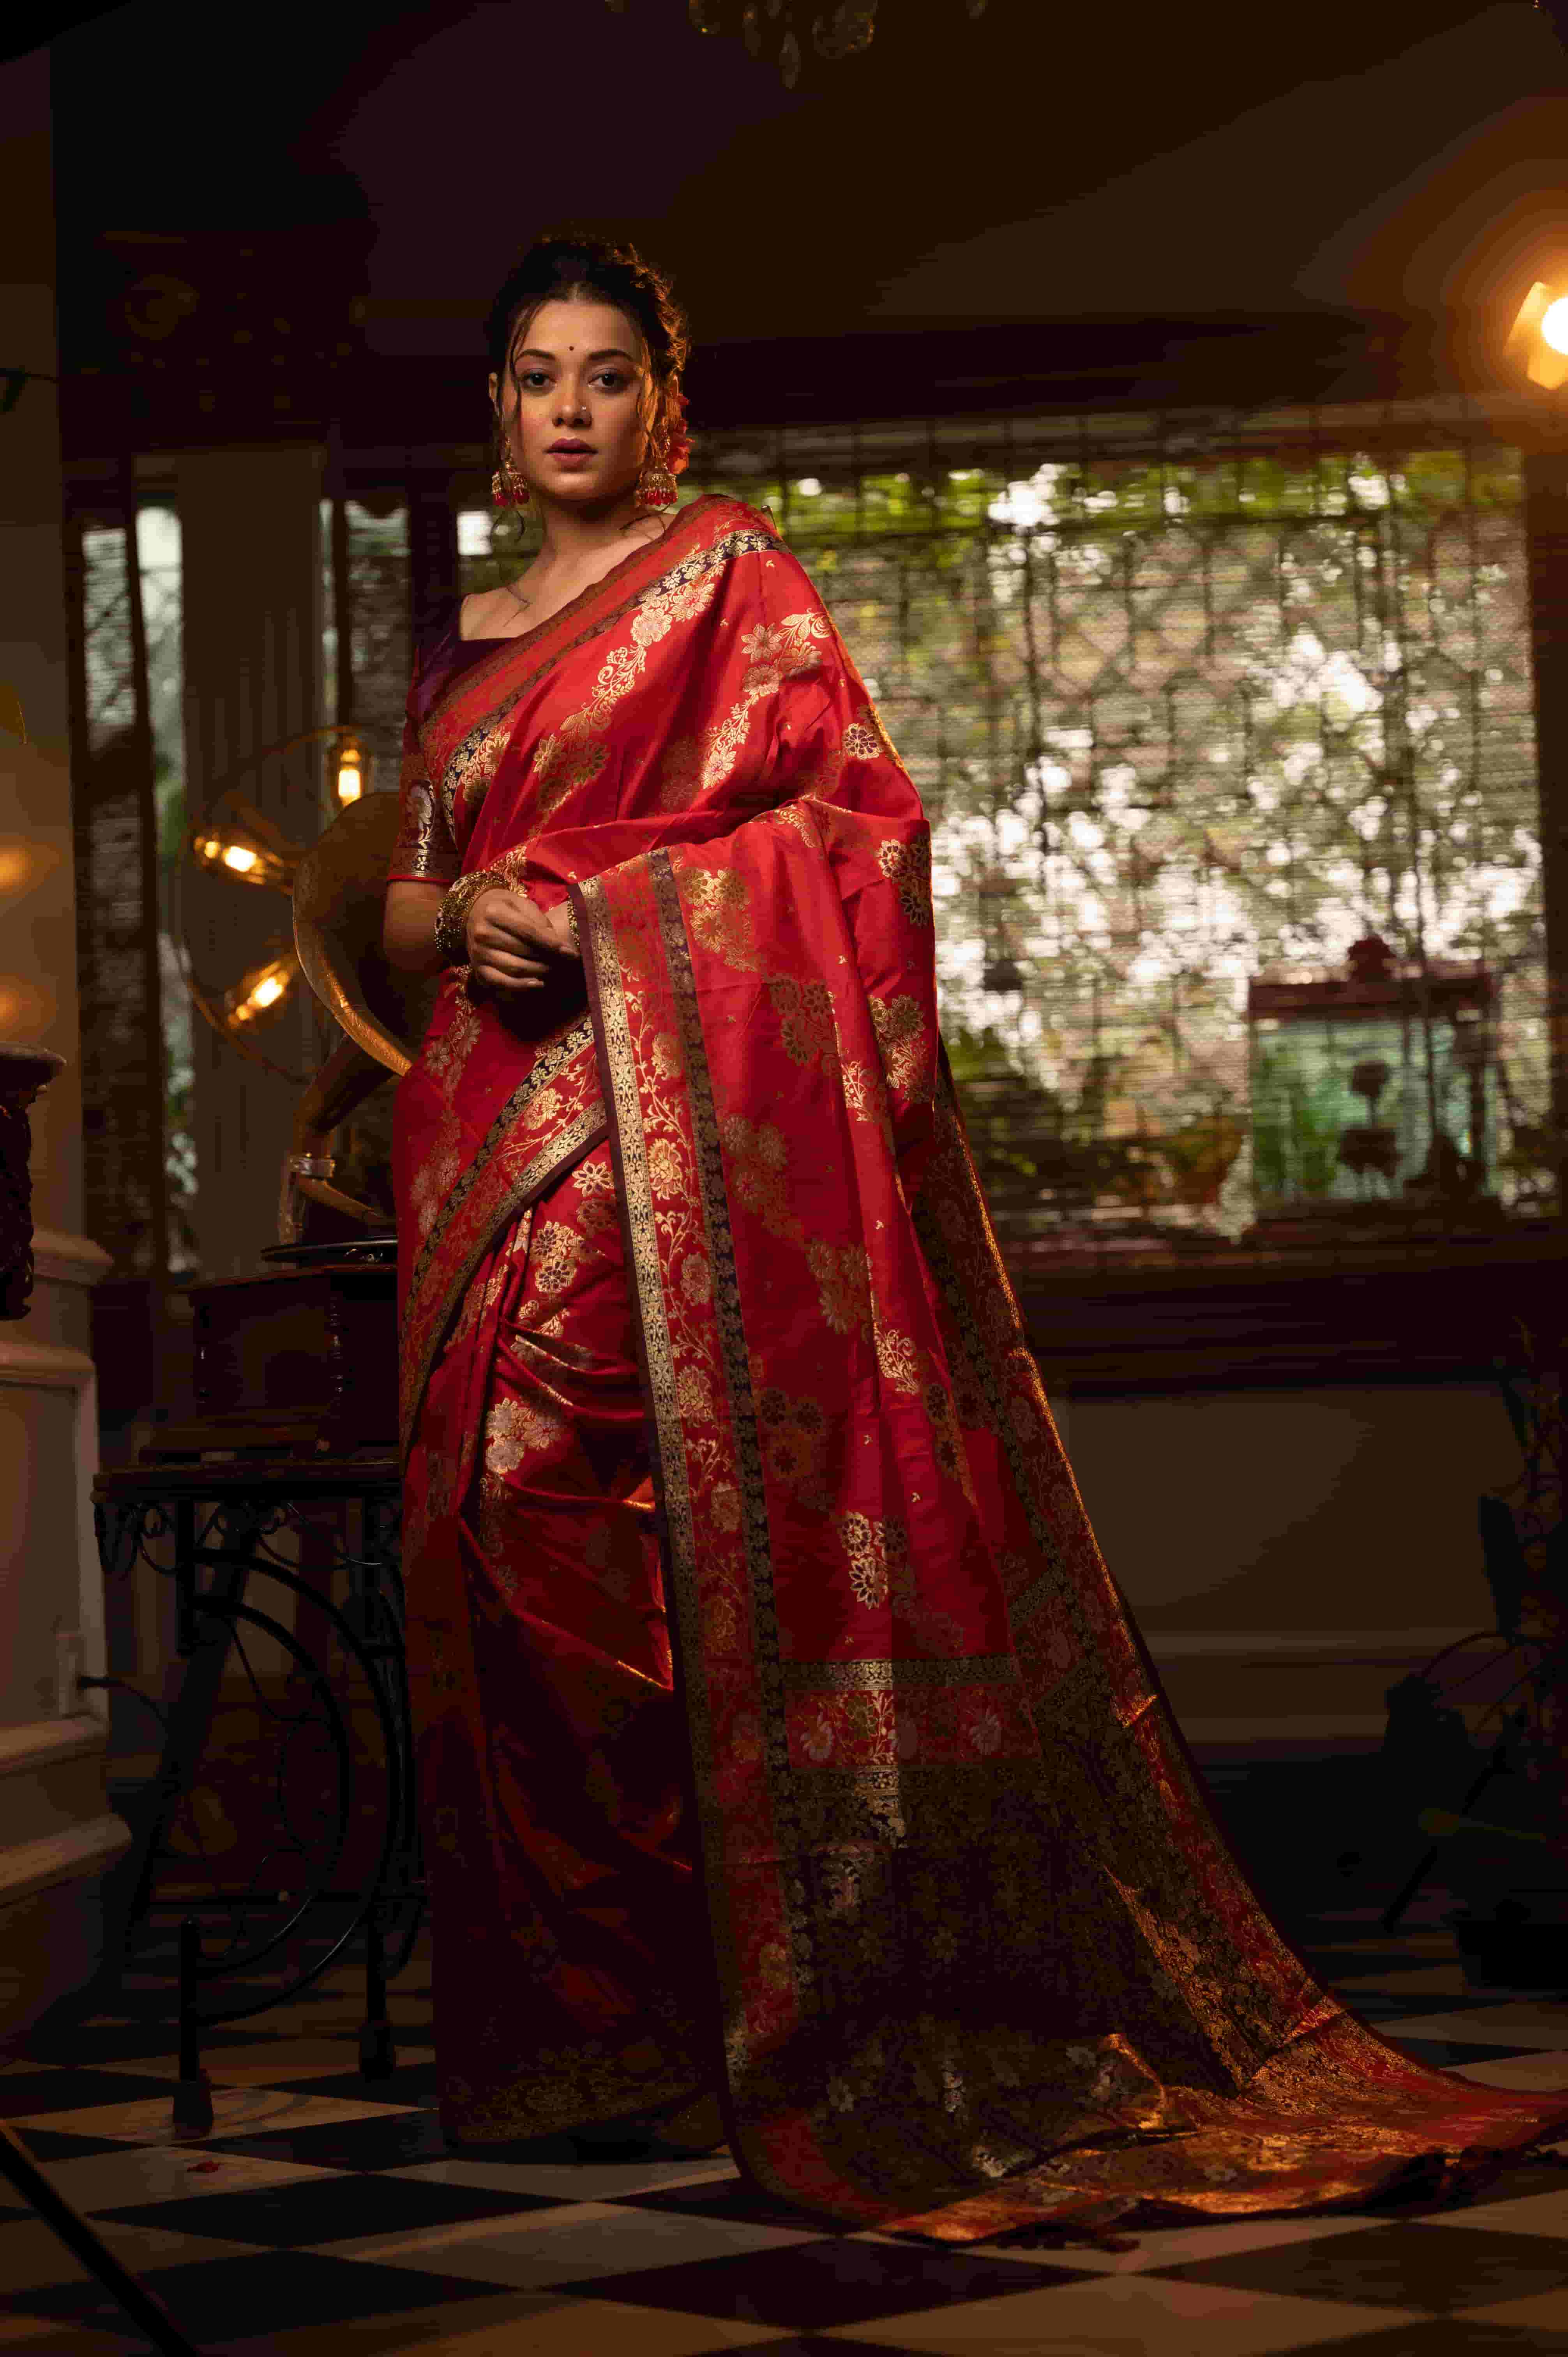 Red Color Banarasi Silk Saree